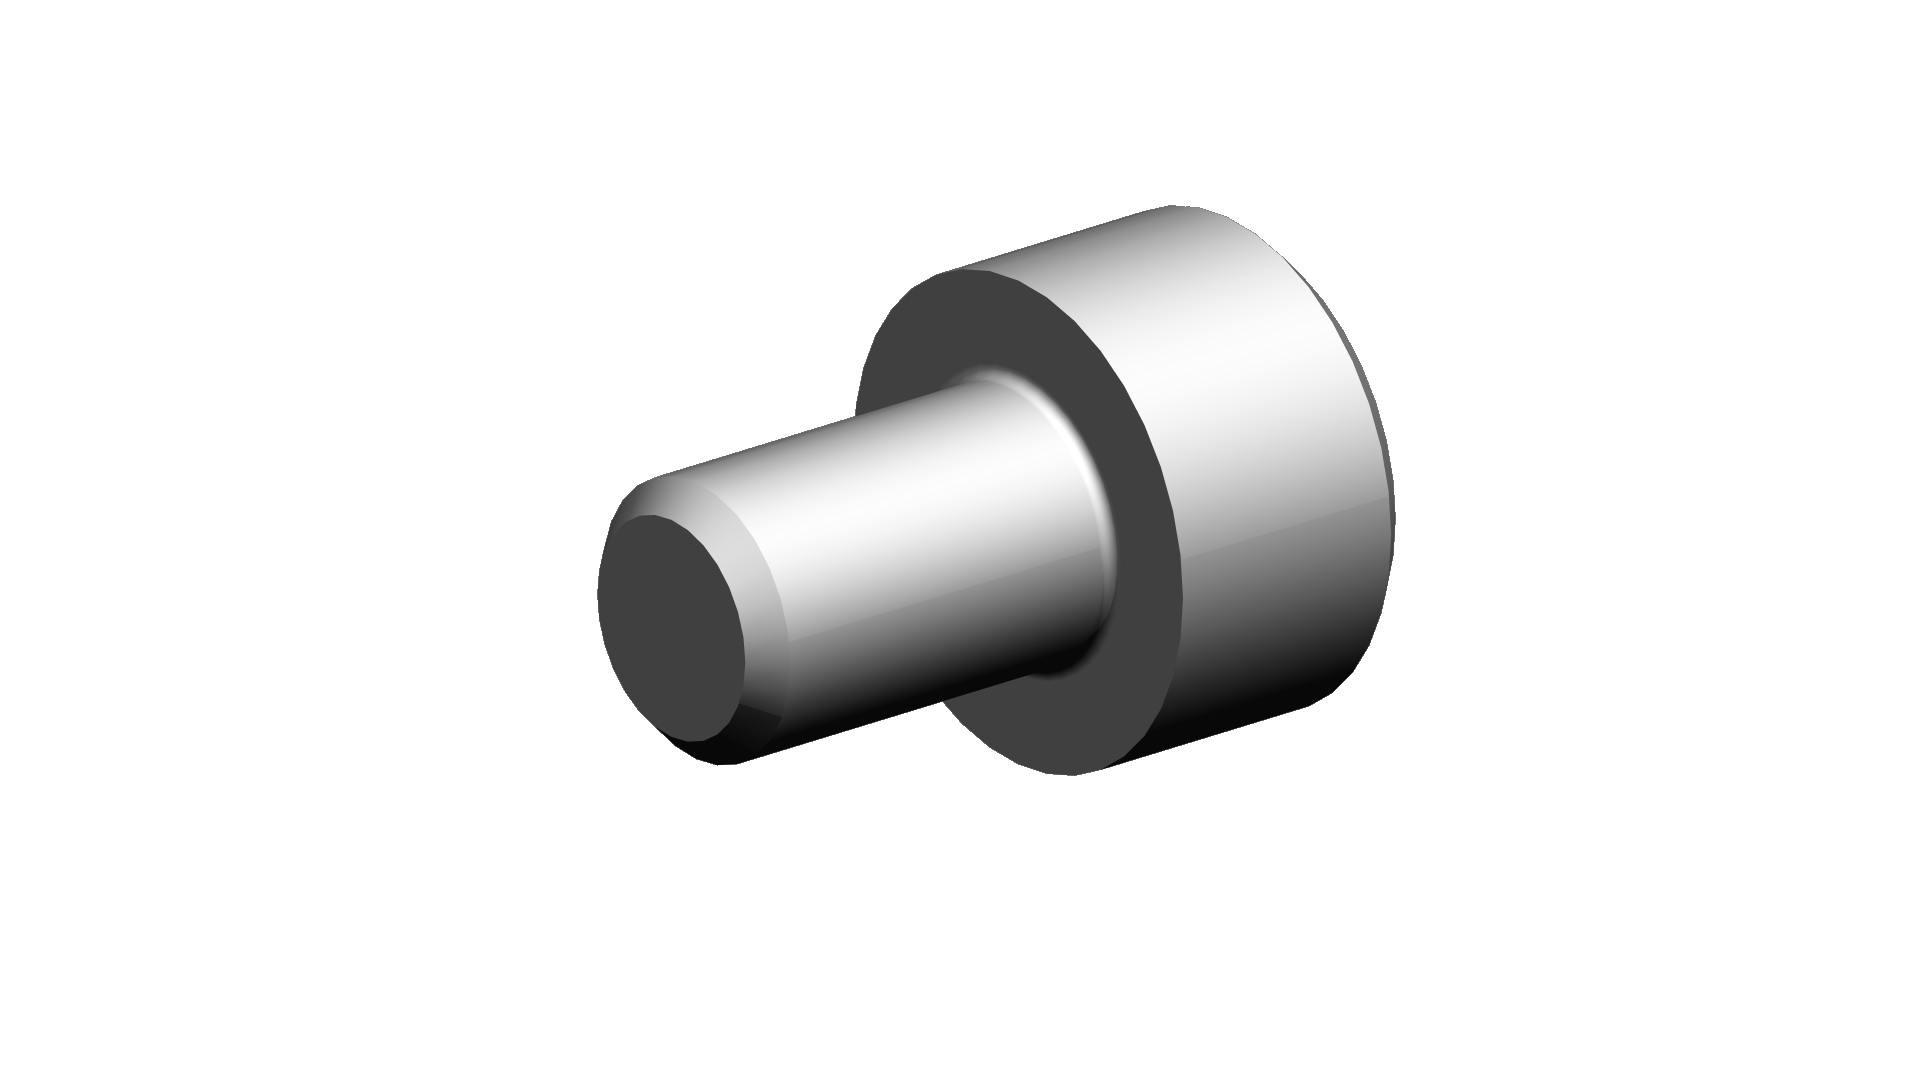 Cylinder head screw